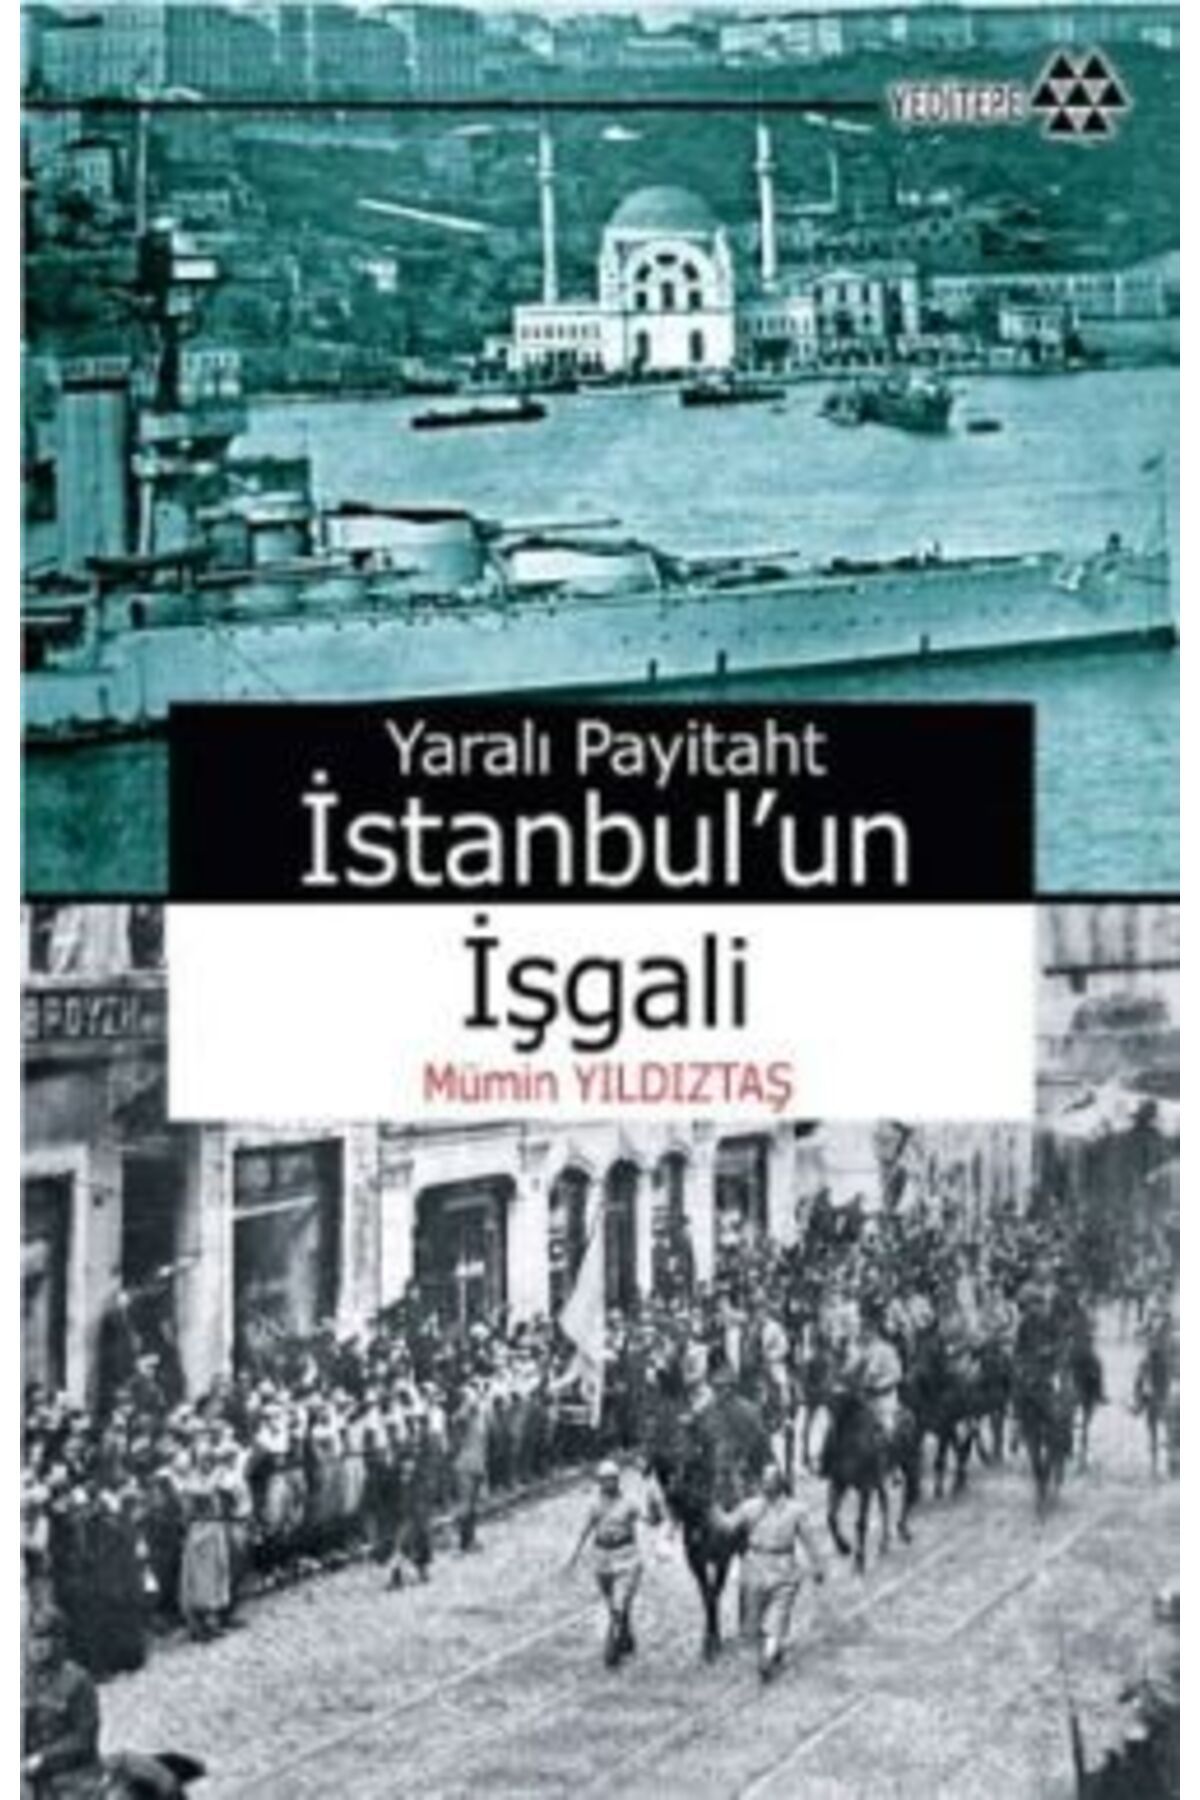 Genel Markalar Yaralı Payitaht Istanbul’un Işgali